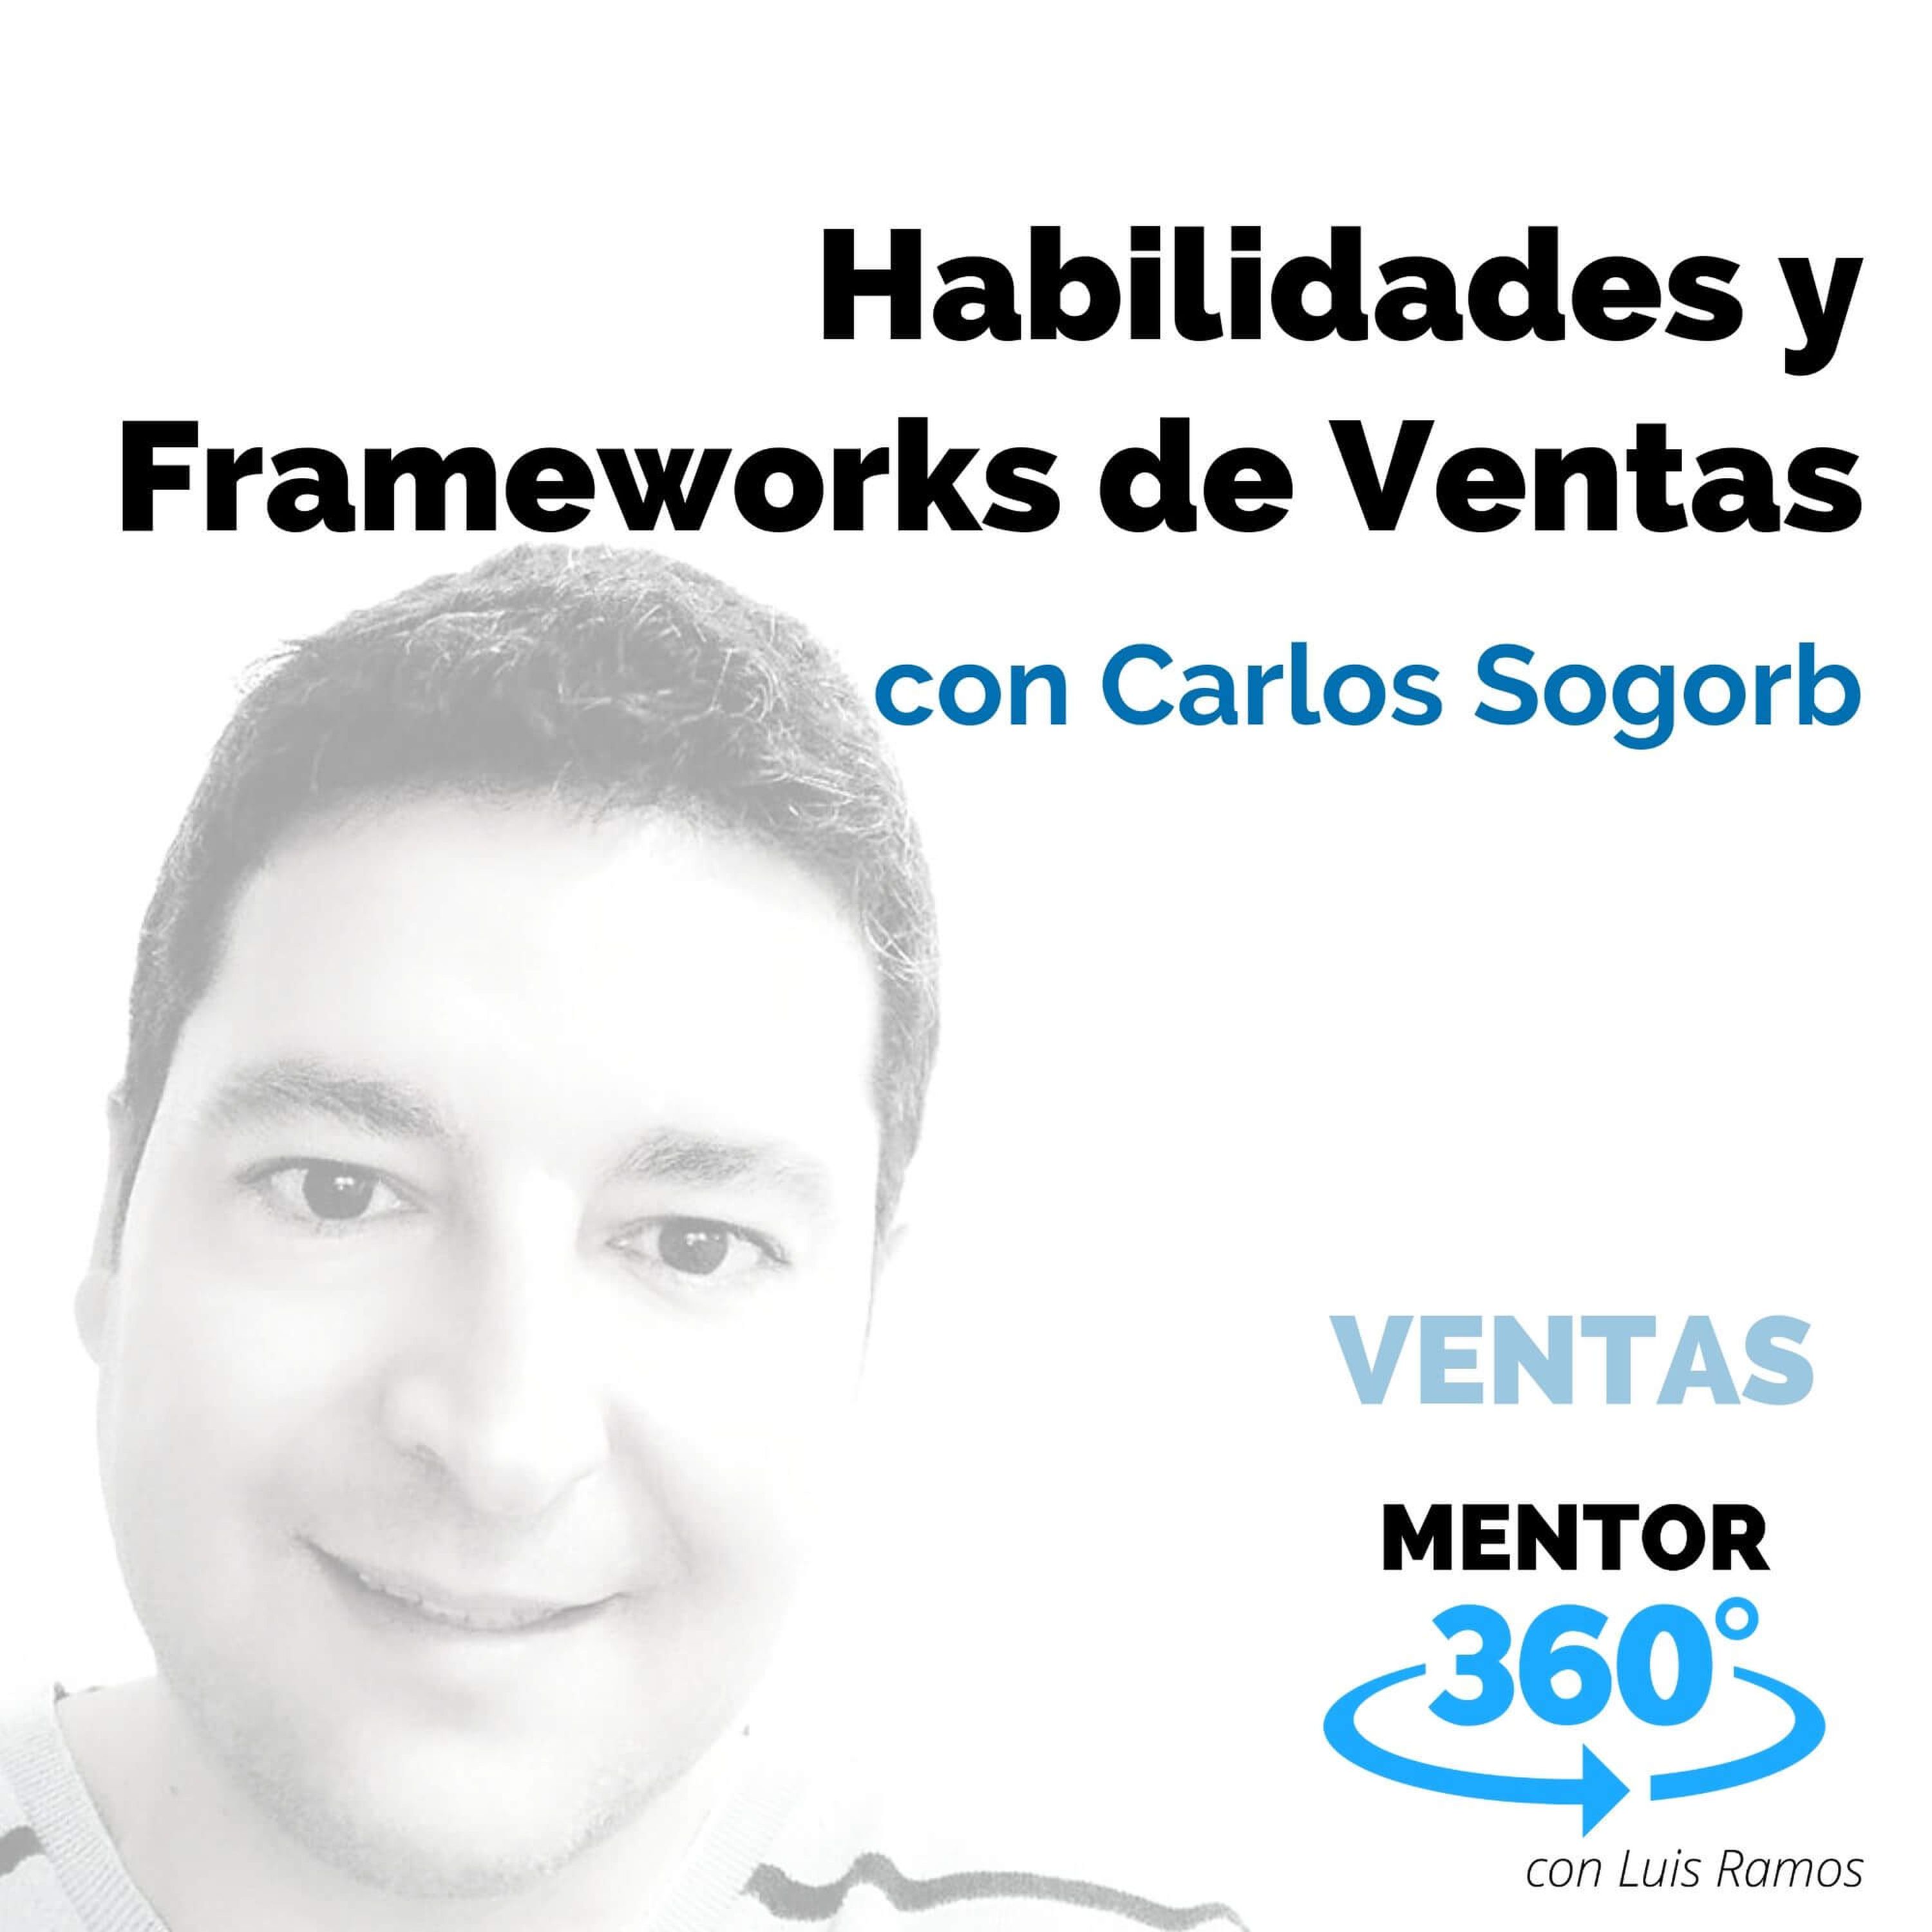 Habilidades y Frameworks de Venta, con Carlos Sogorb - VENTAS - MENTOR360